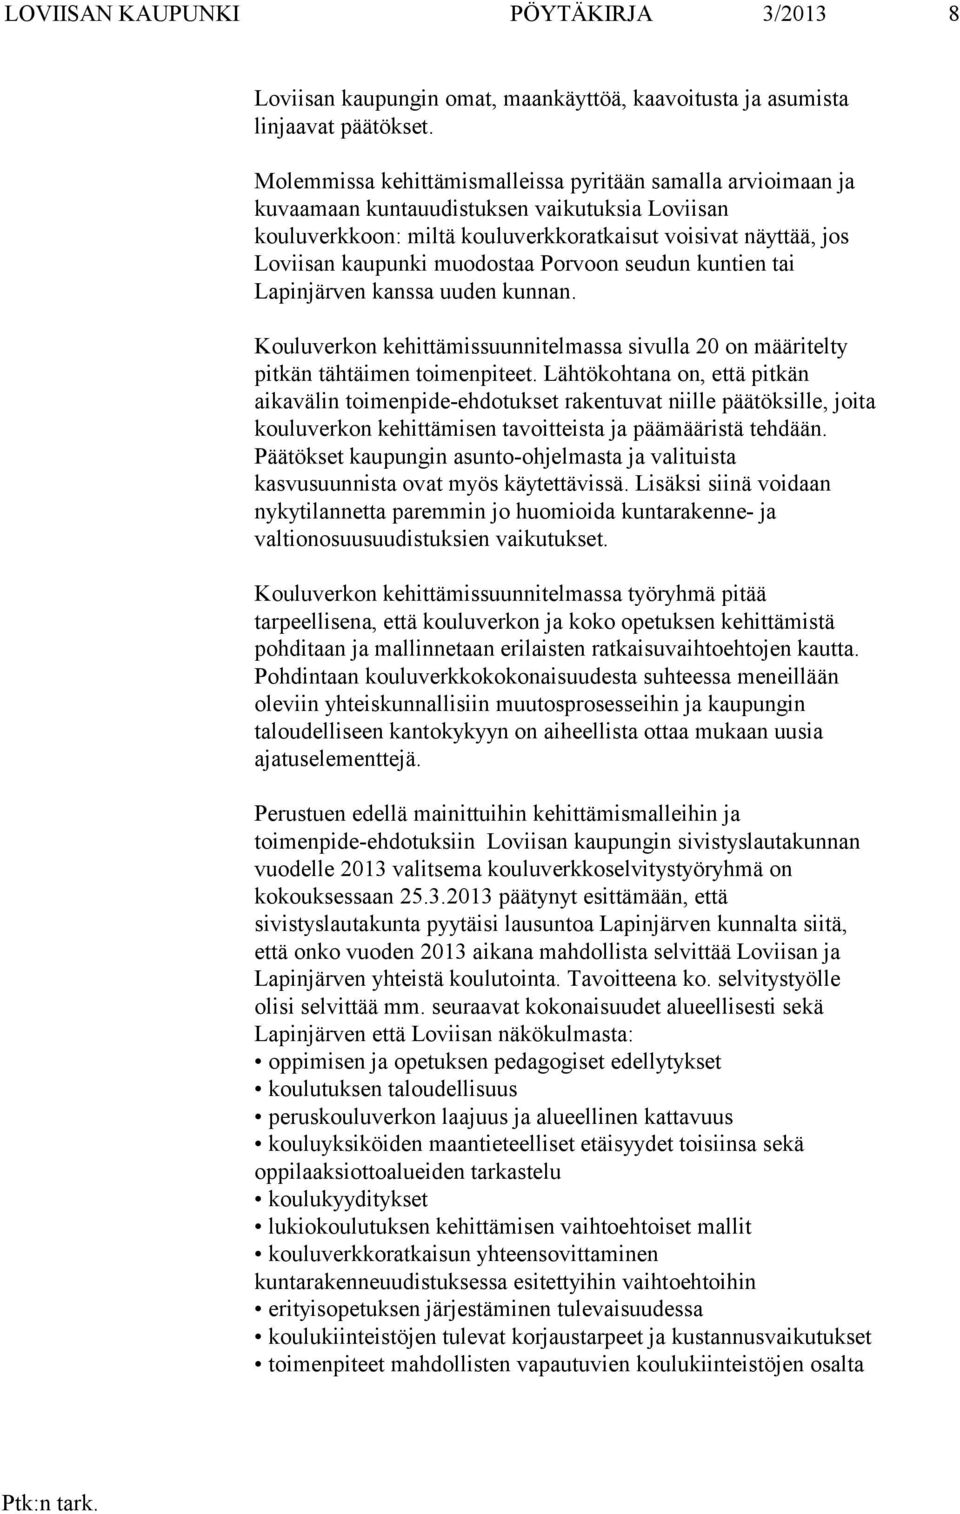 muodostaa Porvoon seudun kuntien tai Lapinjärven kanssa uuden kunnan. Kouluverkon kehittämissuunnitelmassa sivulla 20 on määritelty pitkän tähtäimen toimenpiteet.